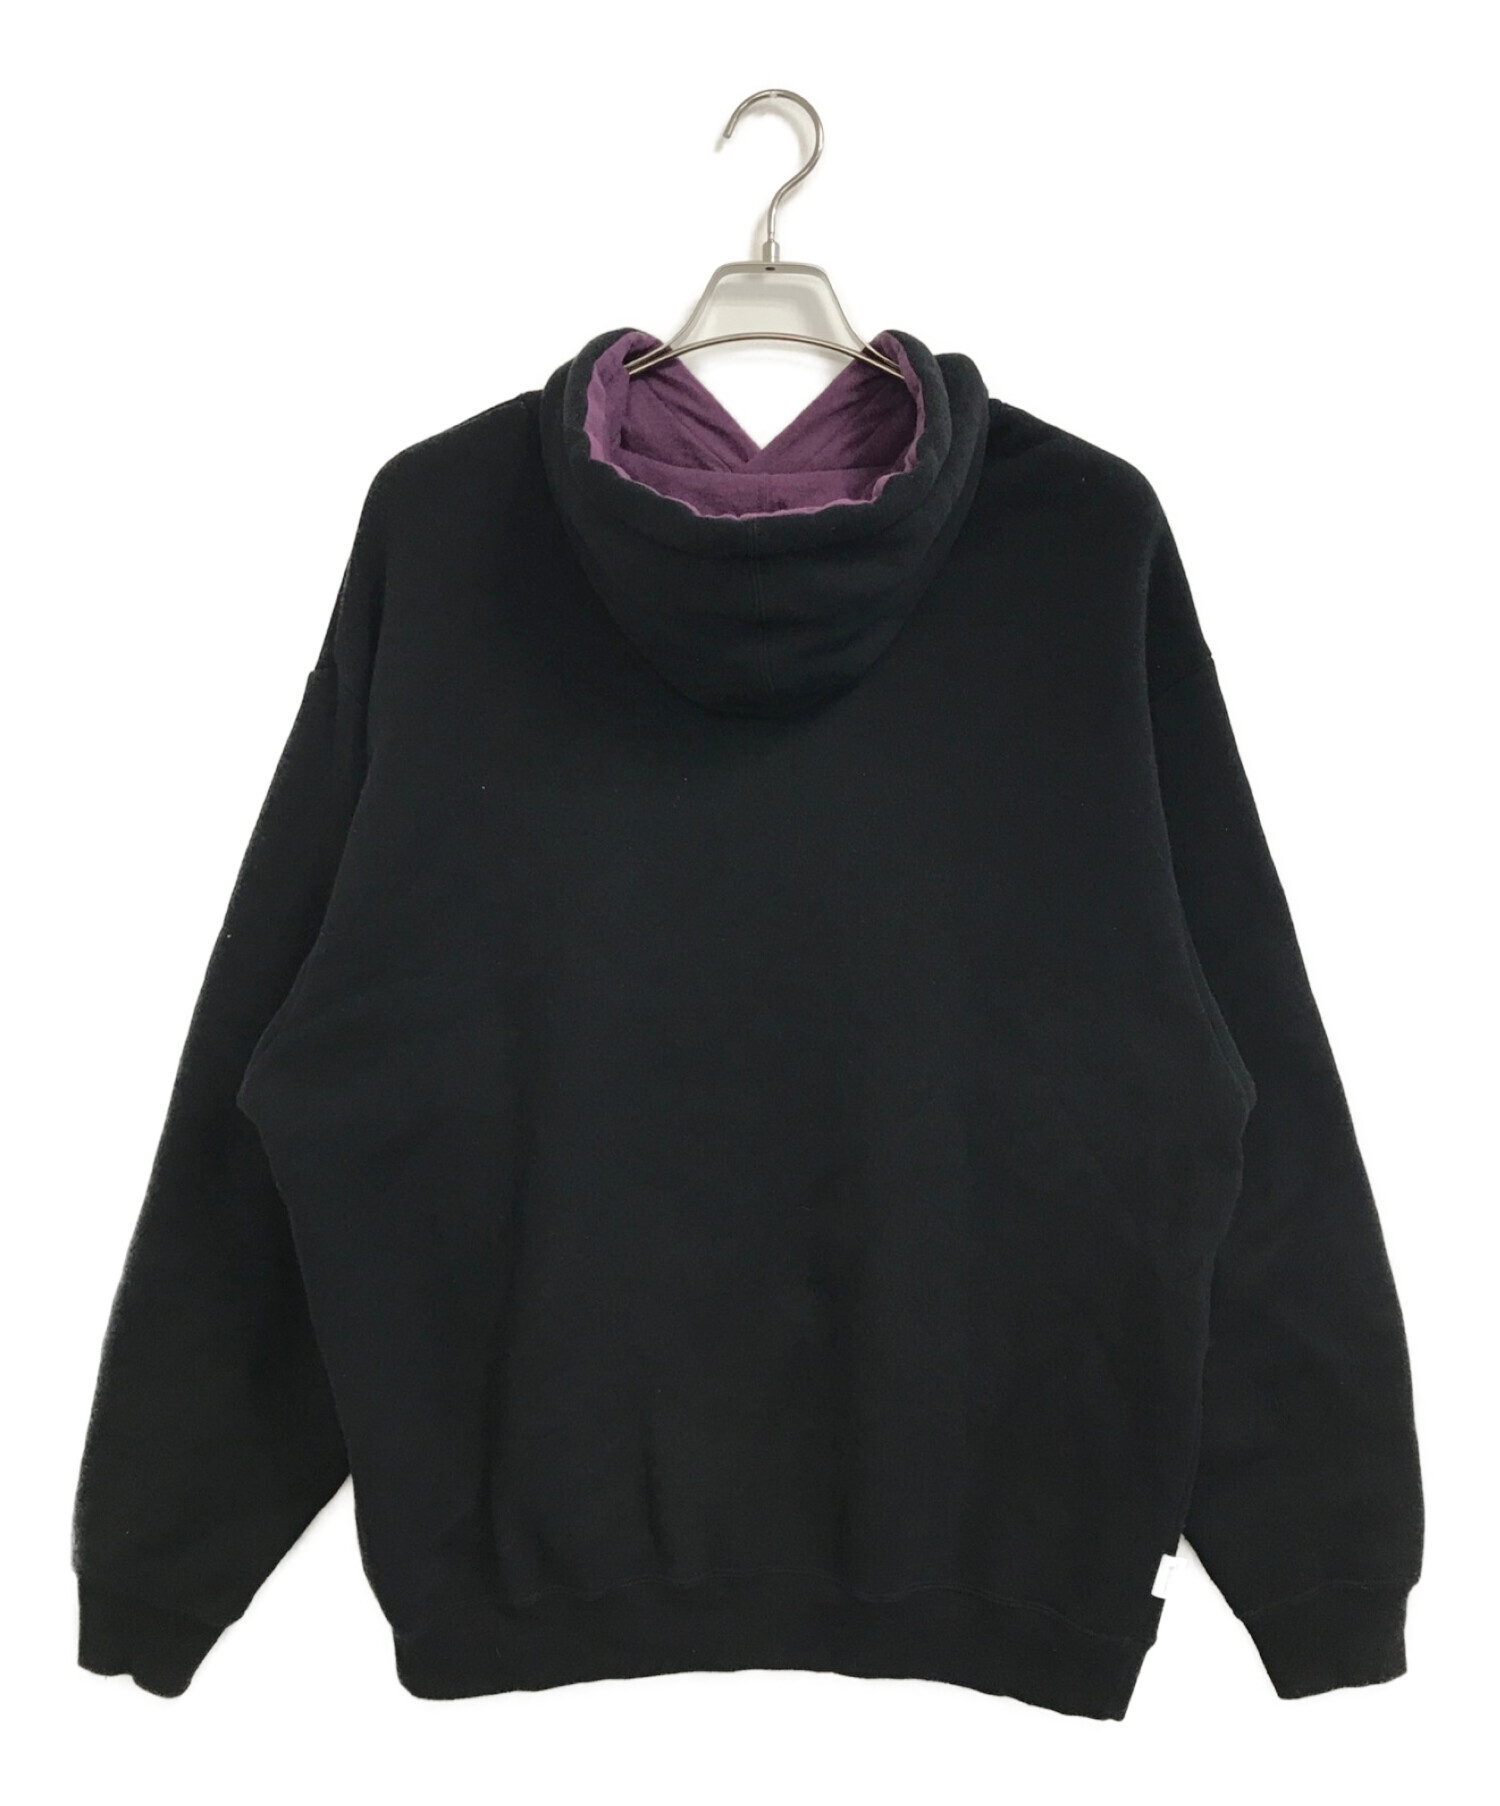 DESCENDANT (ディセンダント) Barkley Hooded Sweatshirt ブラック サイズ:3